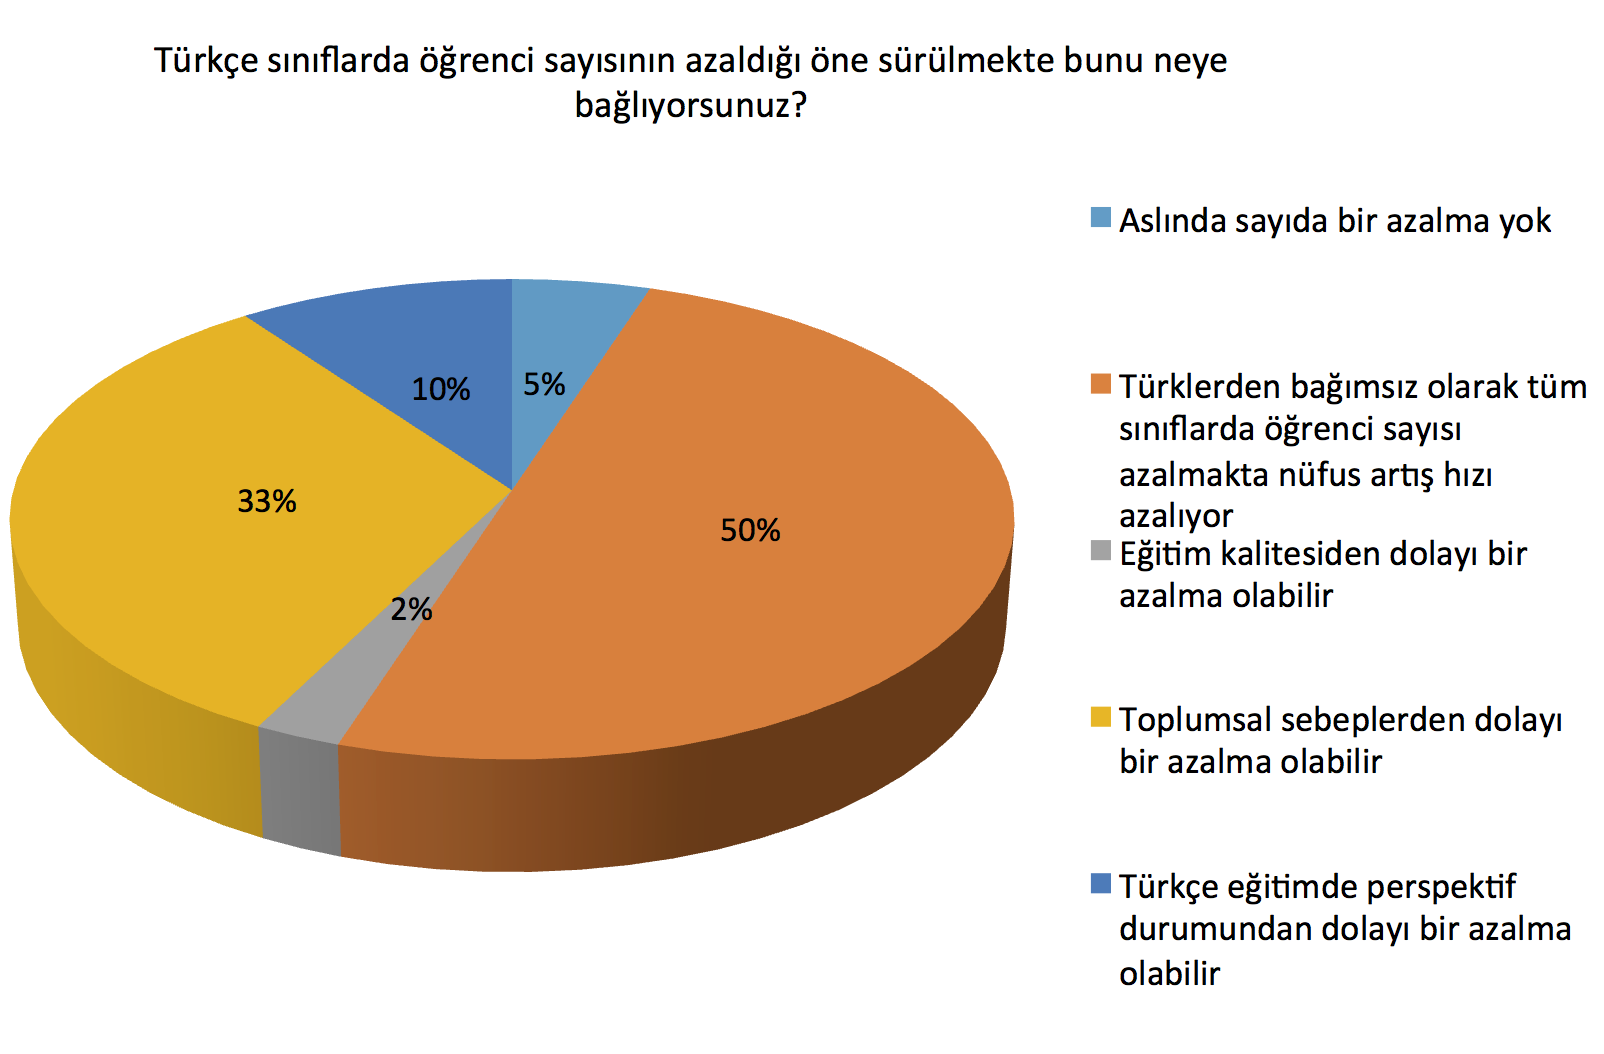 Türkçe eğitimin geleceği konusunda ilkokul öğretmenlerin görüşleri kaygılandırıcı değil. Öğretmenlerin %57 si istikrarını koruyacağını belirtirken, %28 i daha iyiye gideceği görüşünde.